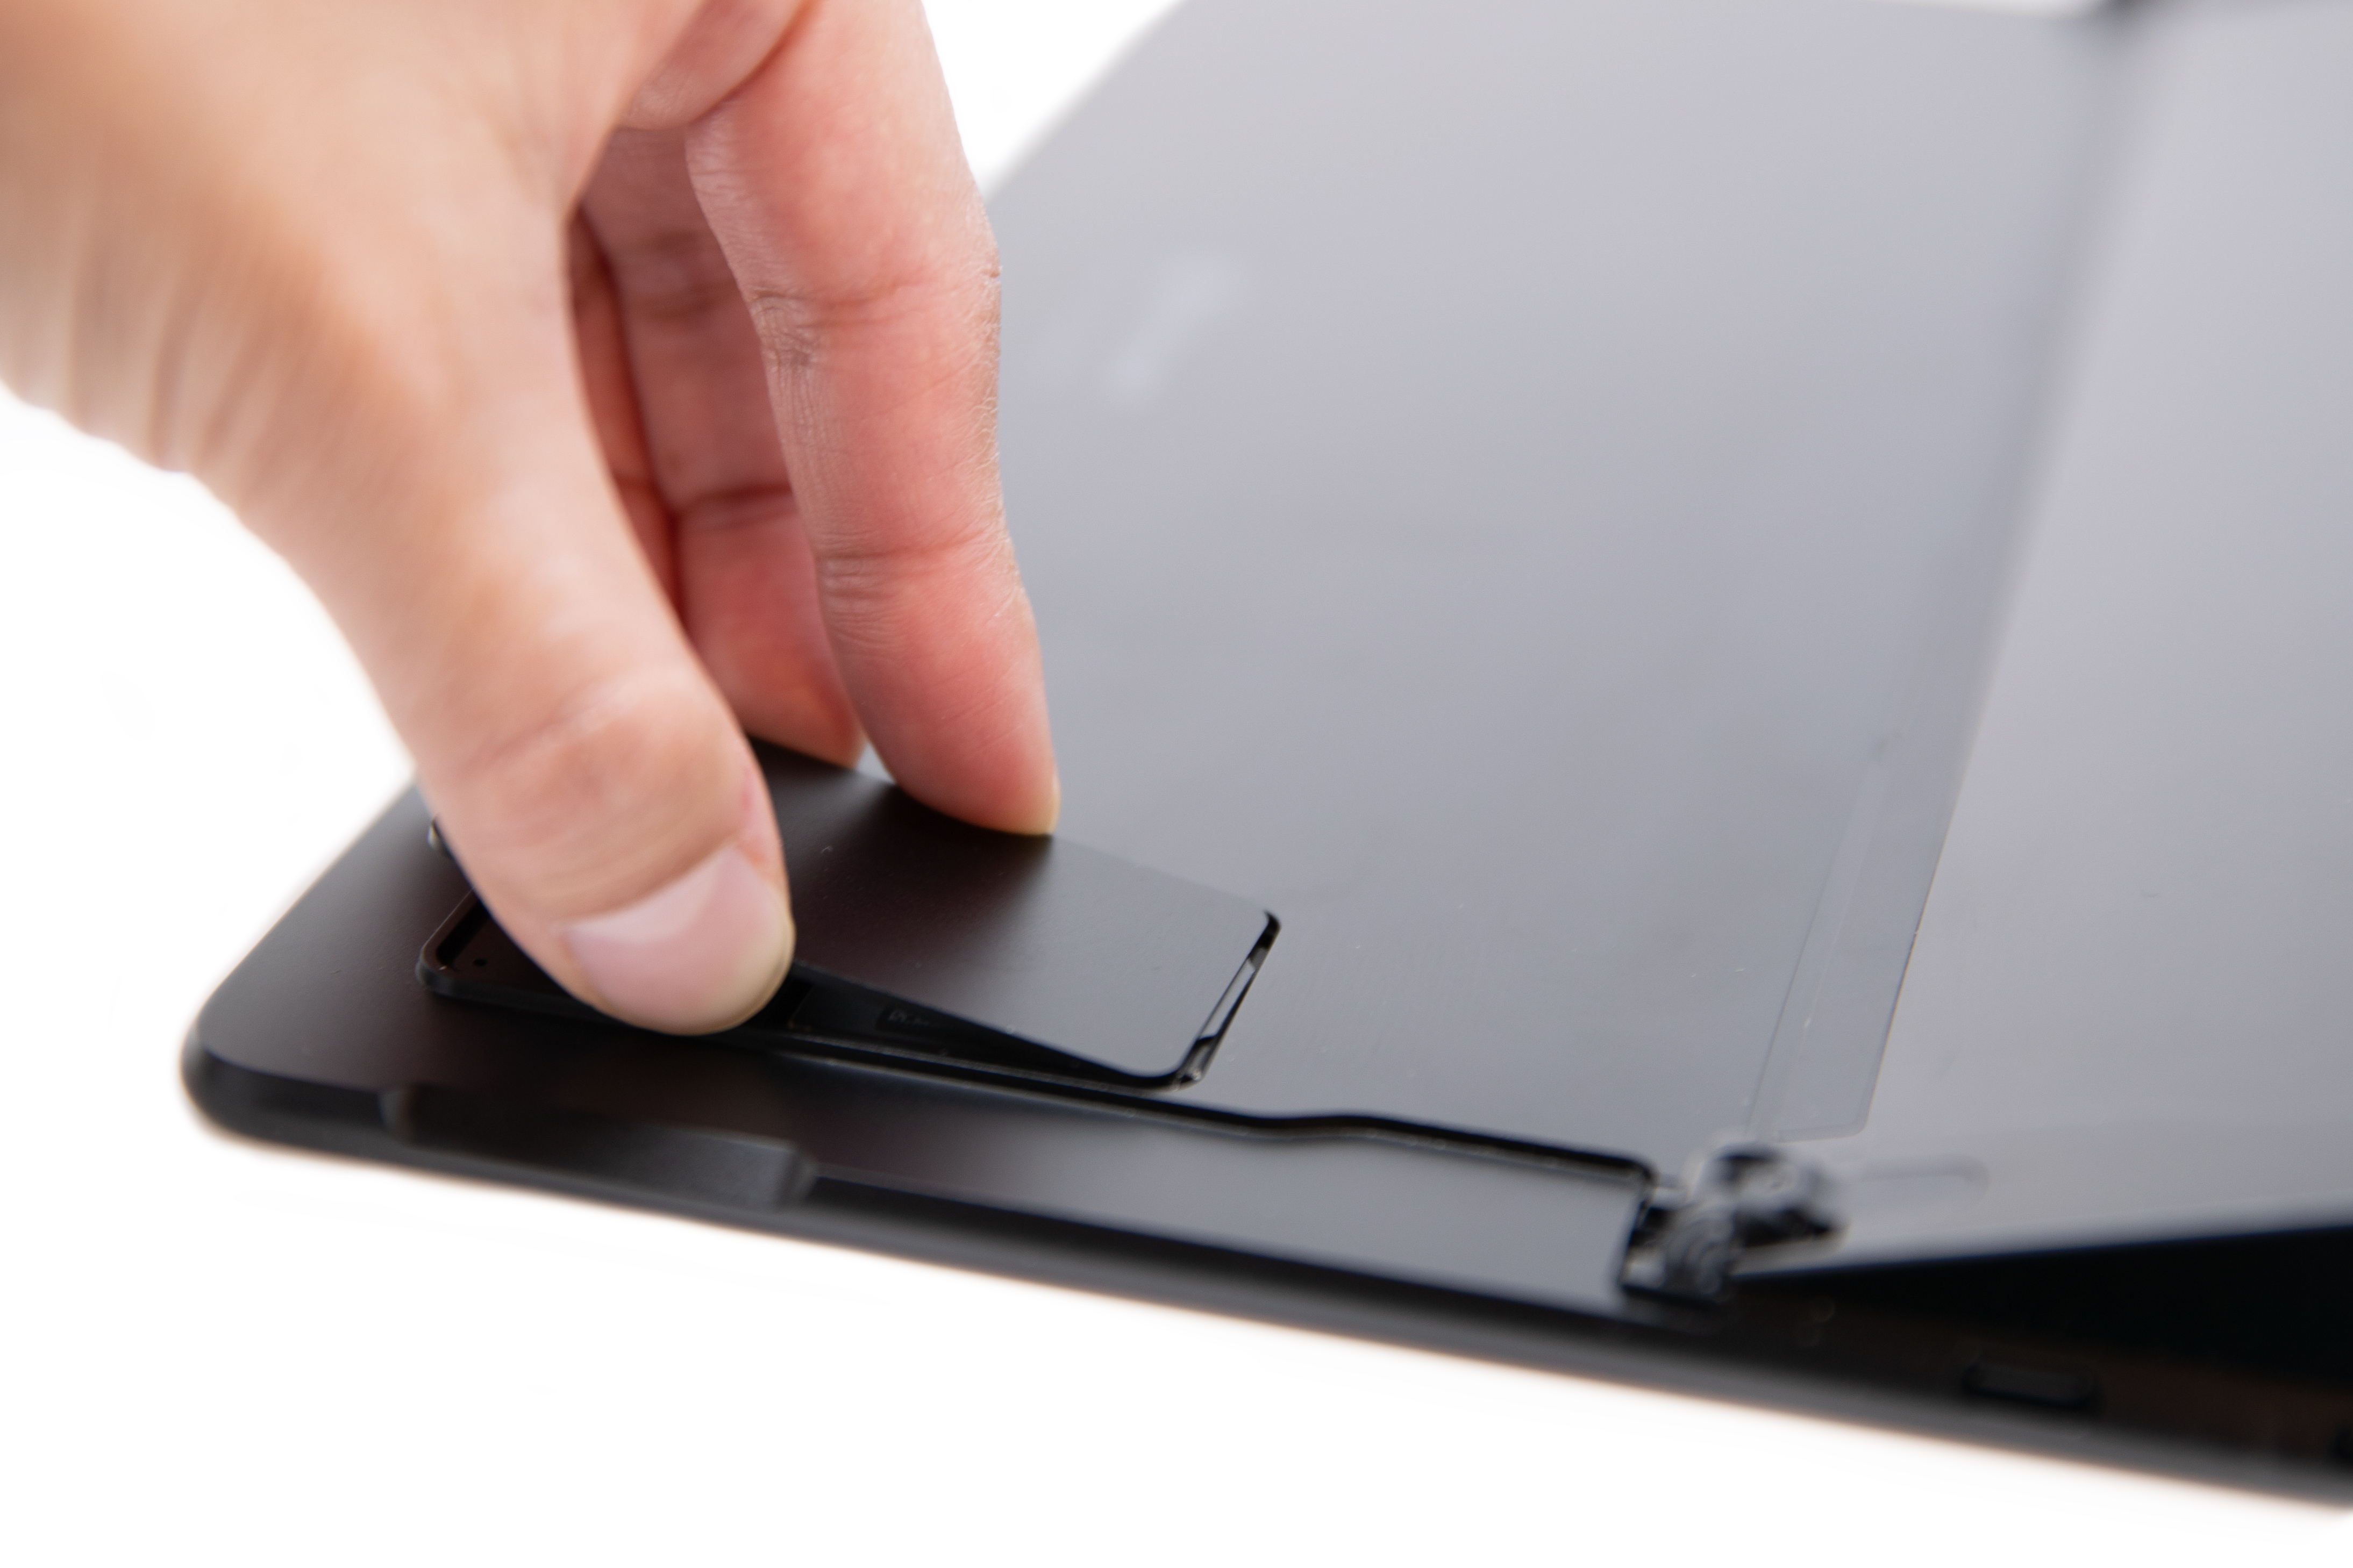 人員將 Surface Pro X 的 SIM 卡蓋滑回原位。